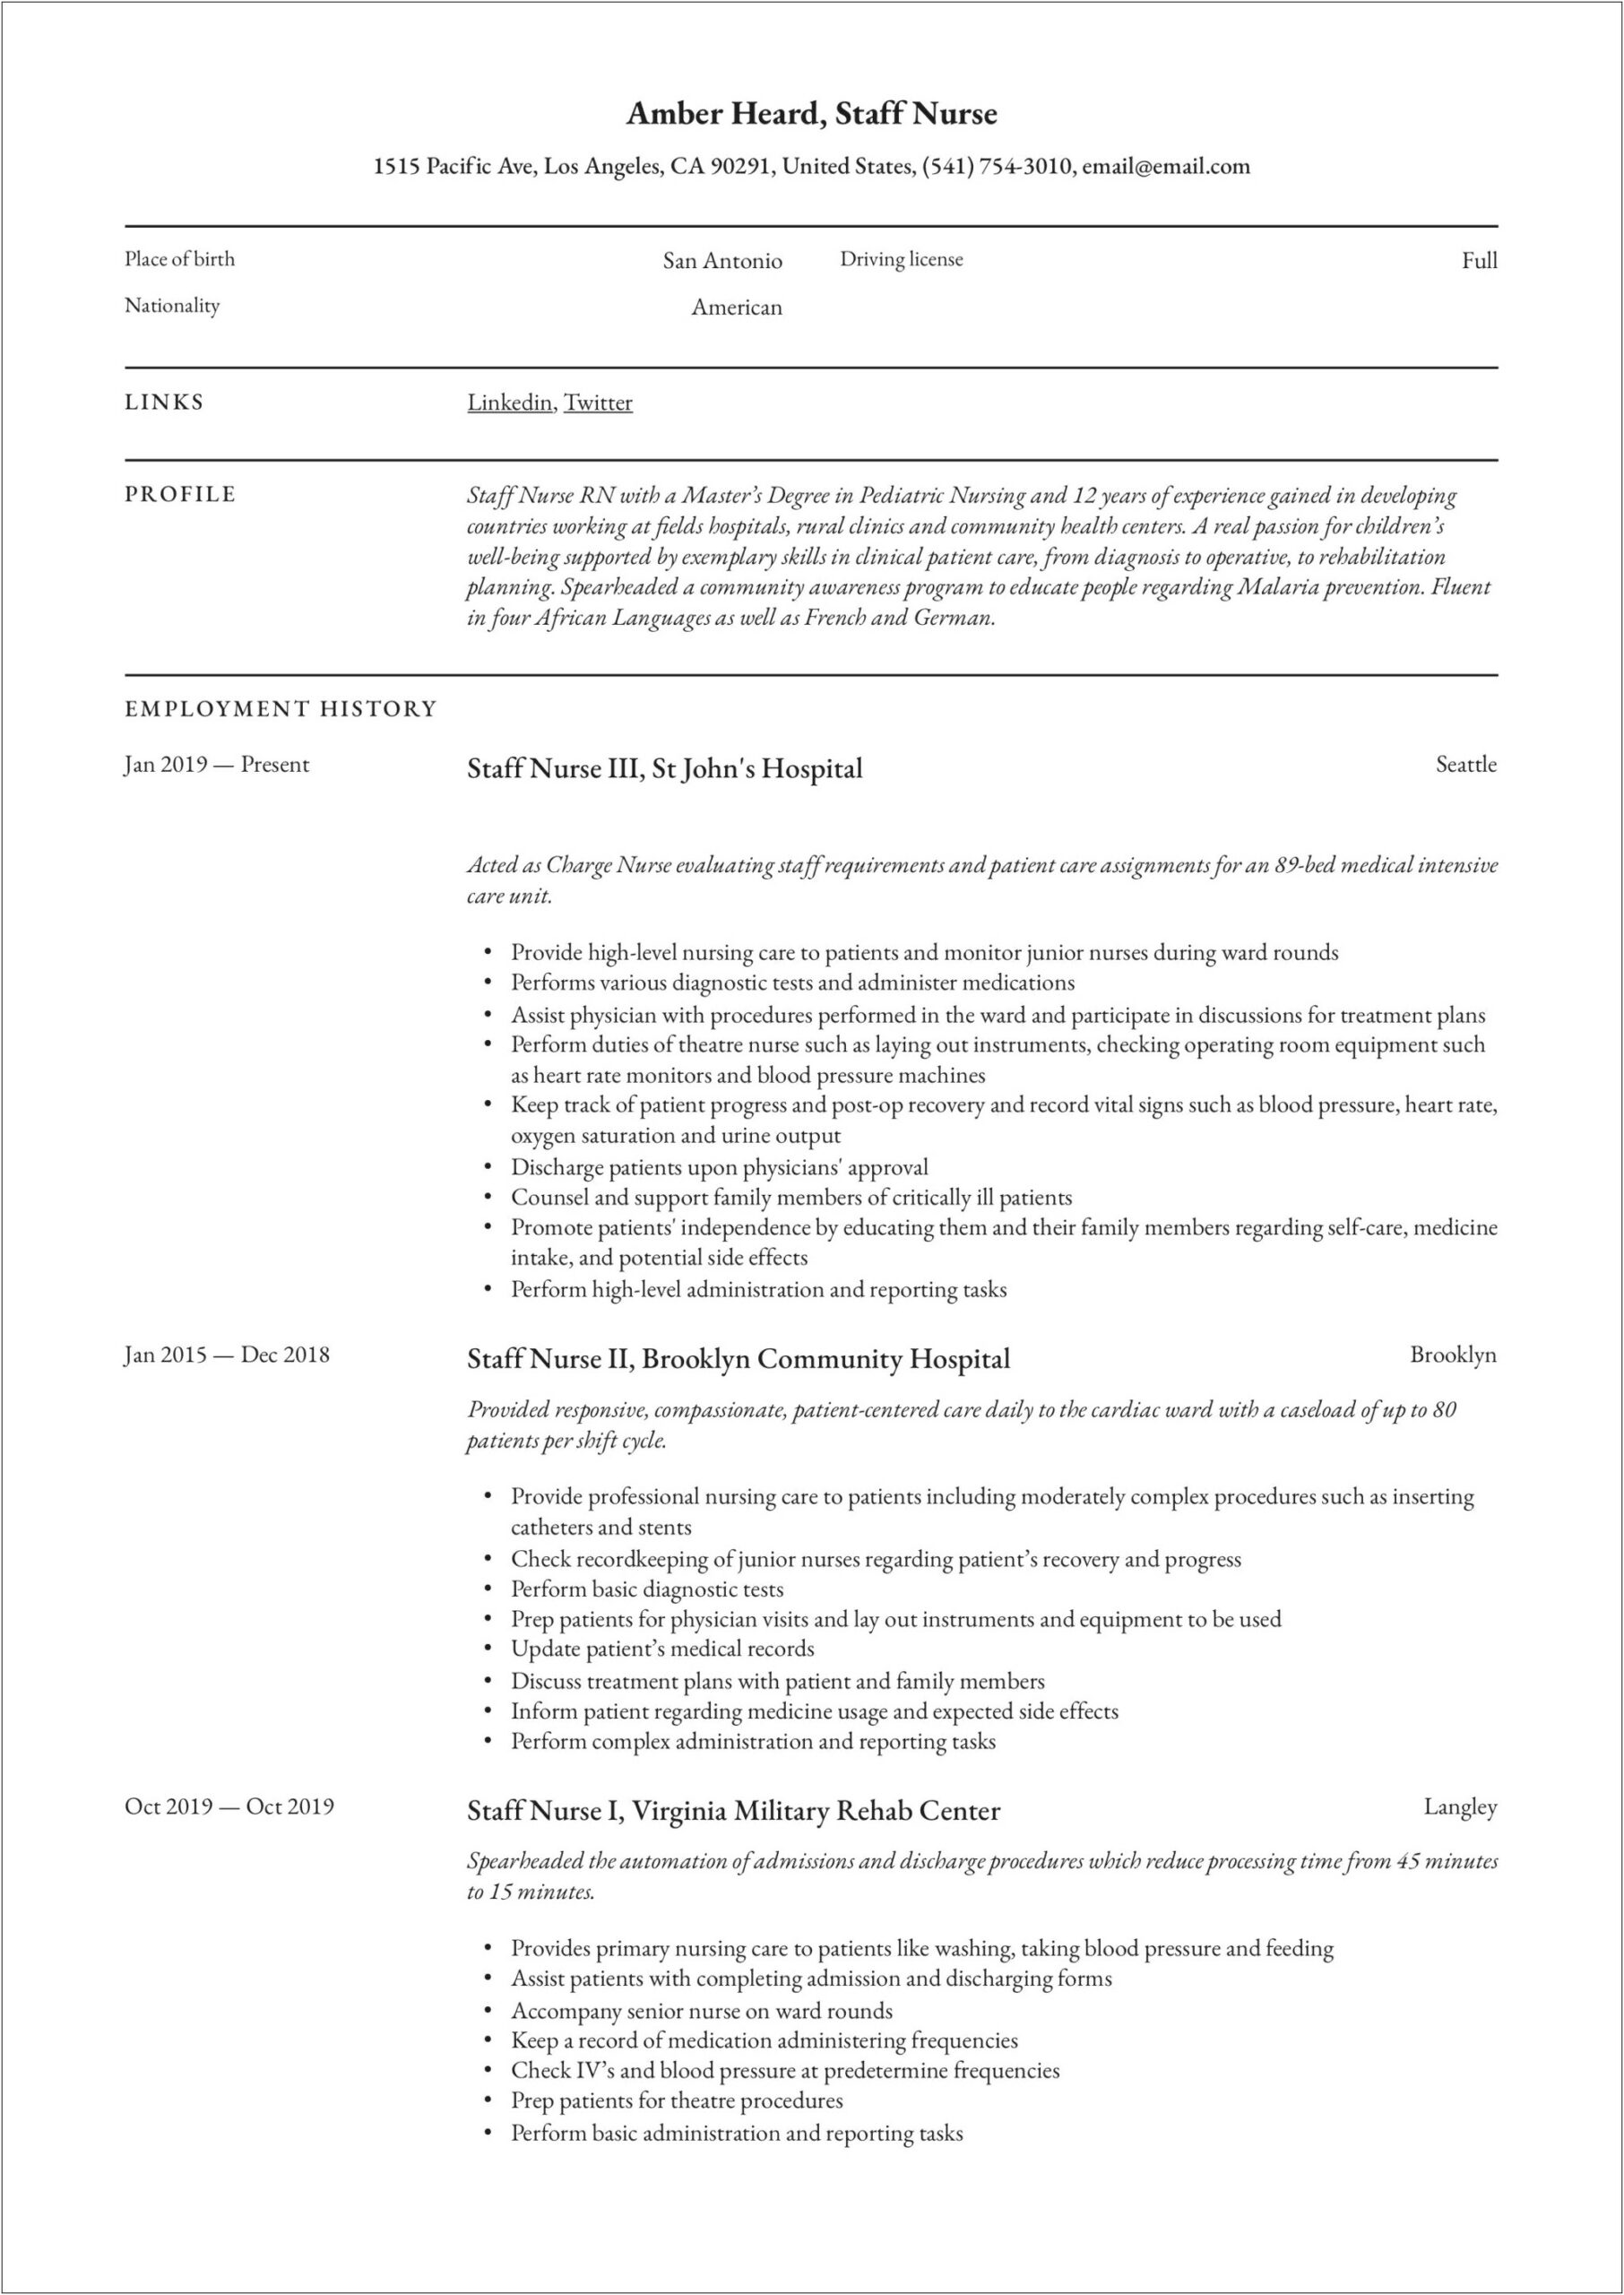 Sample Resume For Icu Registered Nurse